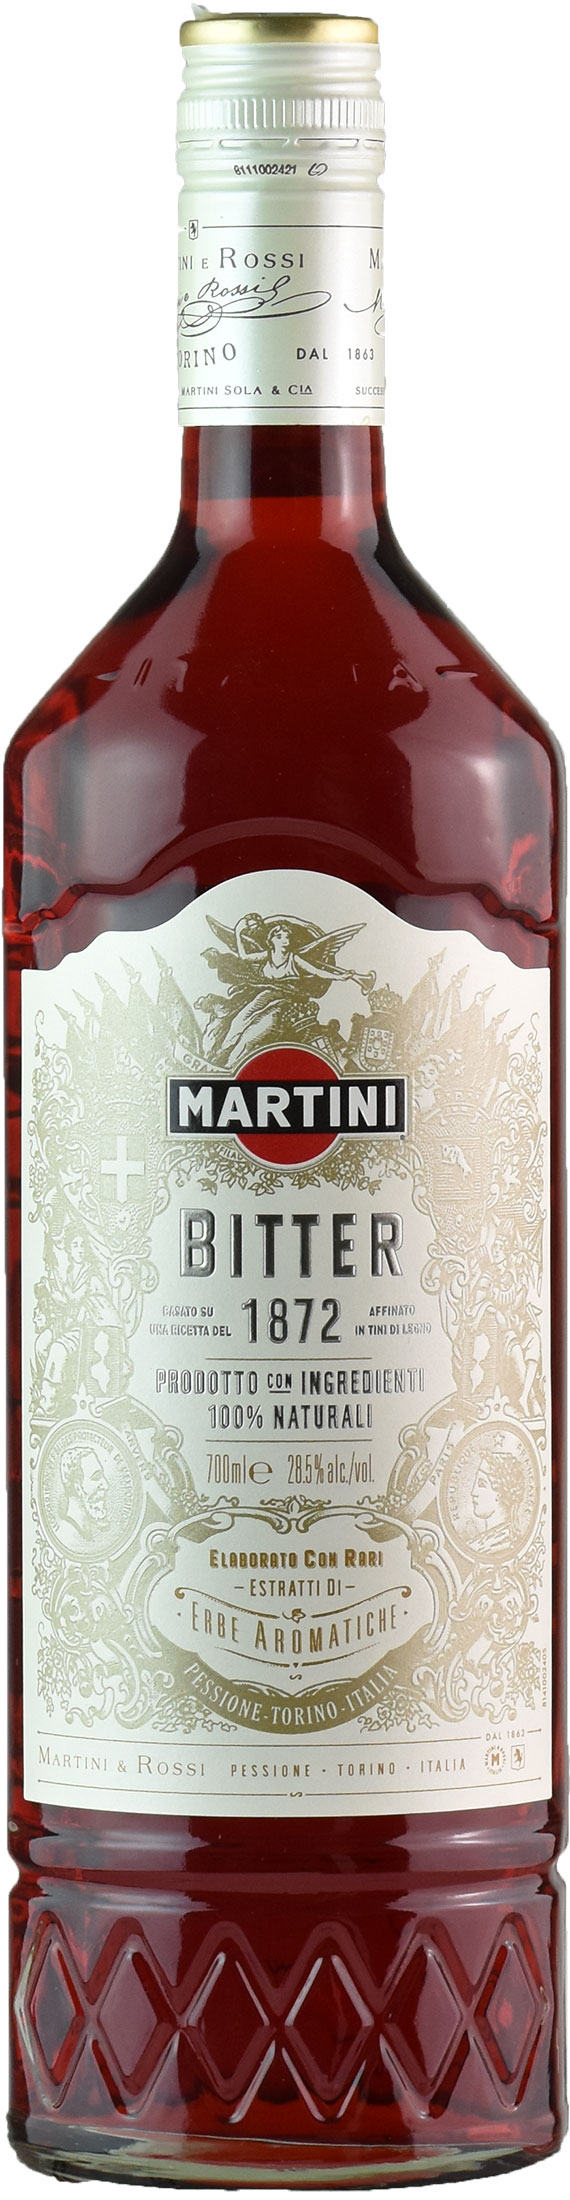 Martini Bitter Riserva Speciale